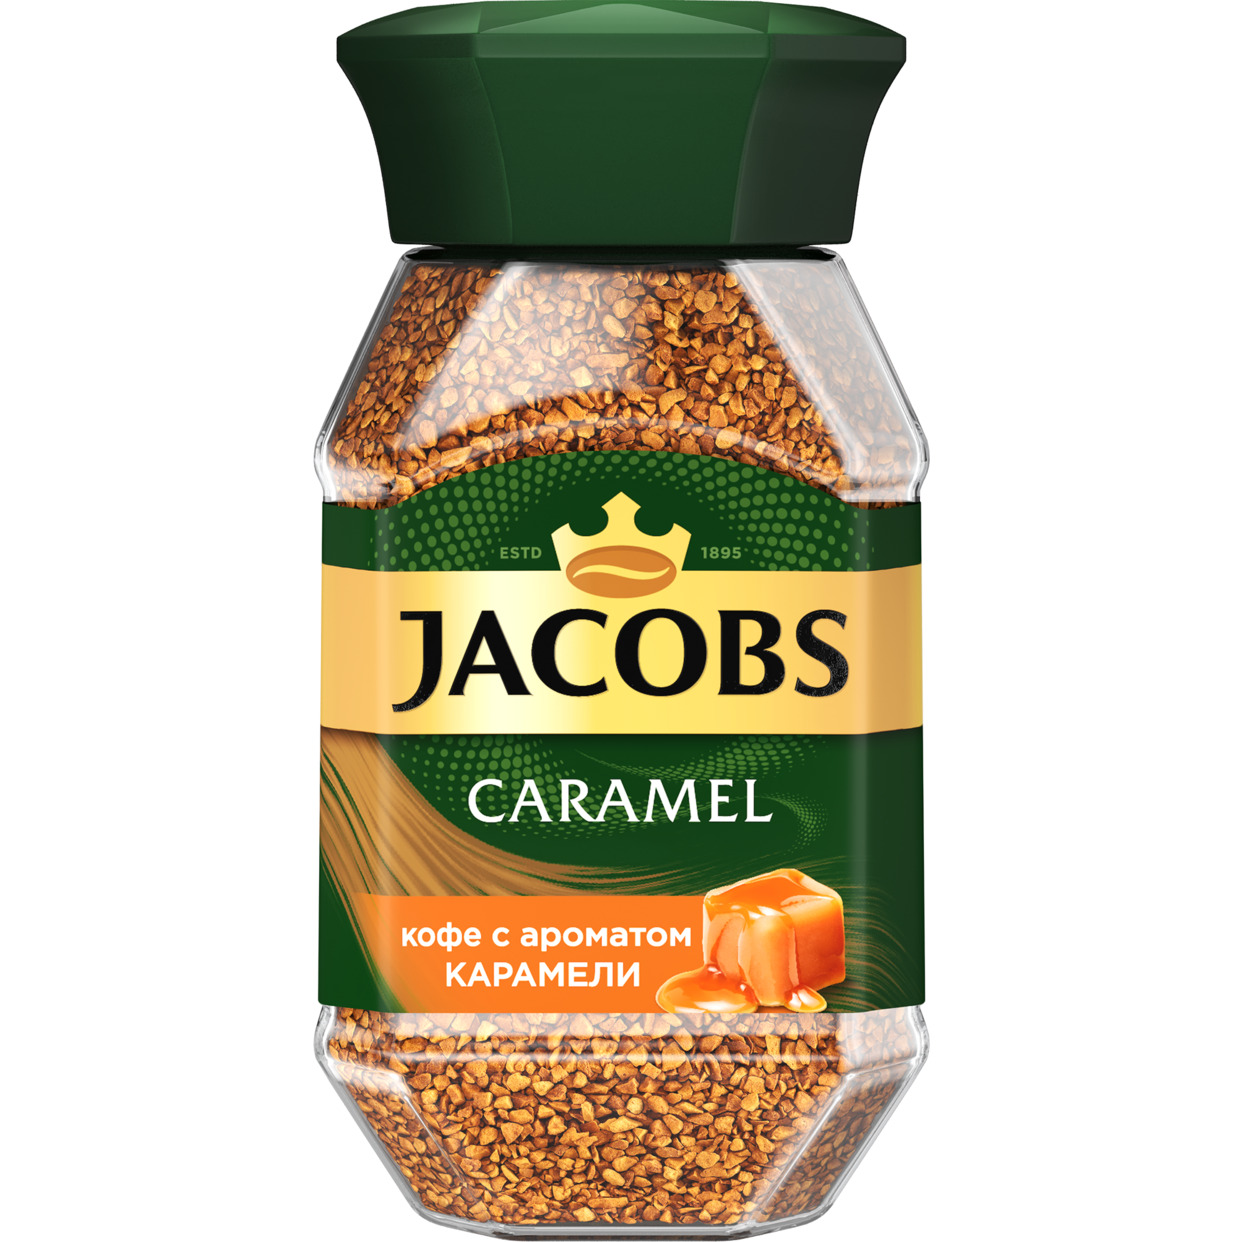 Кофе натуральный растворимый сублимированный JACOBS Caramel с ароматом карамели 6х95г по акции в Пятерочке